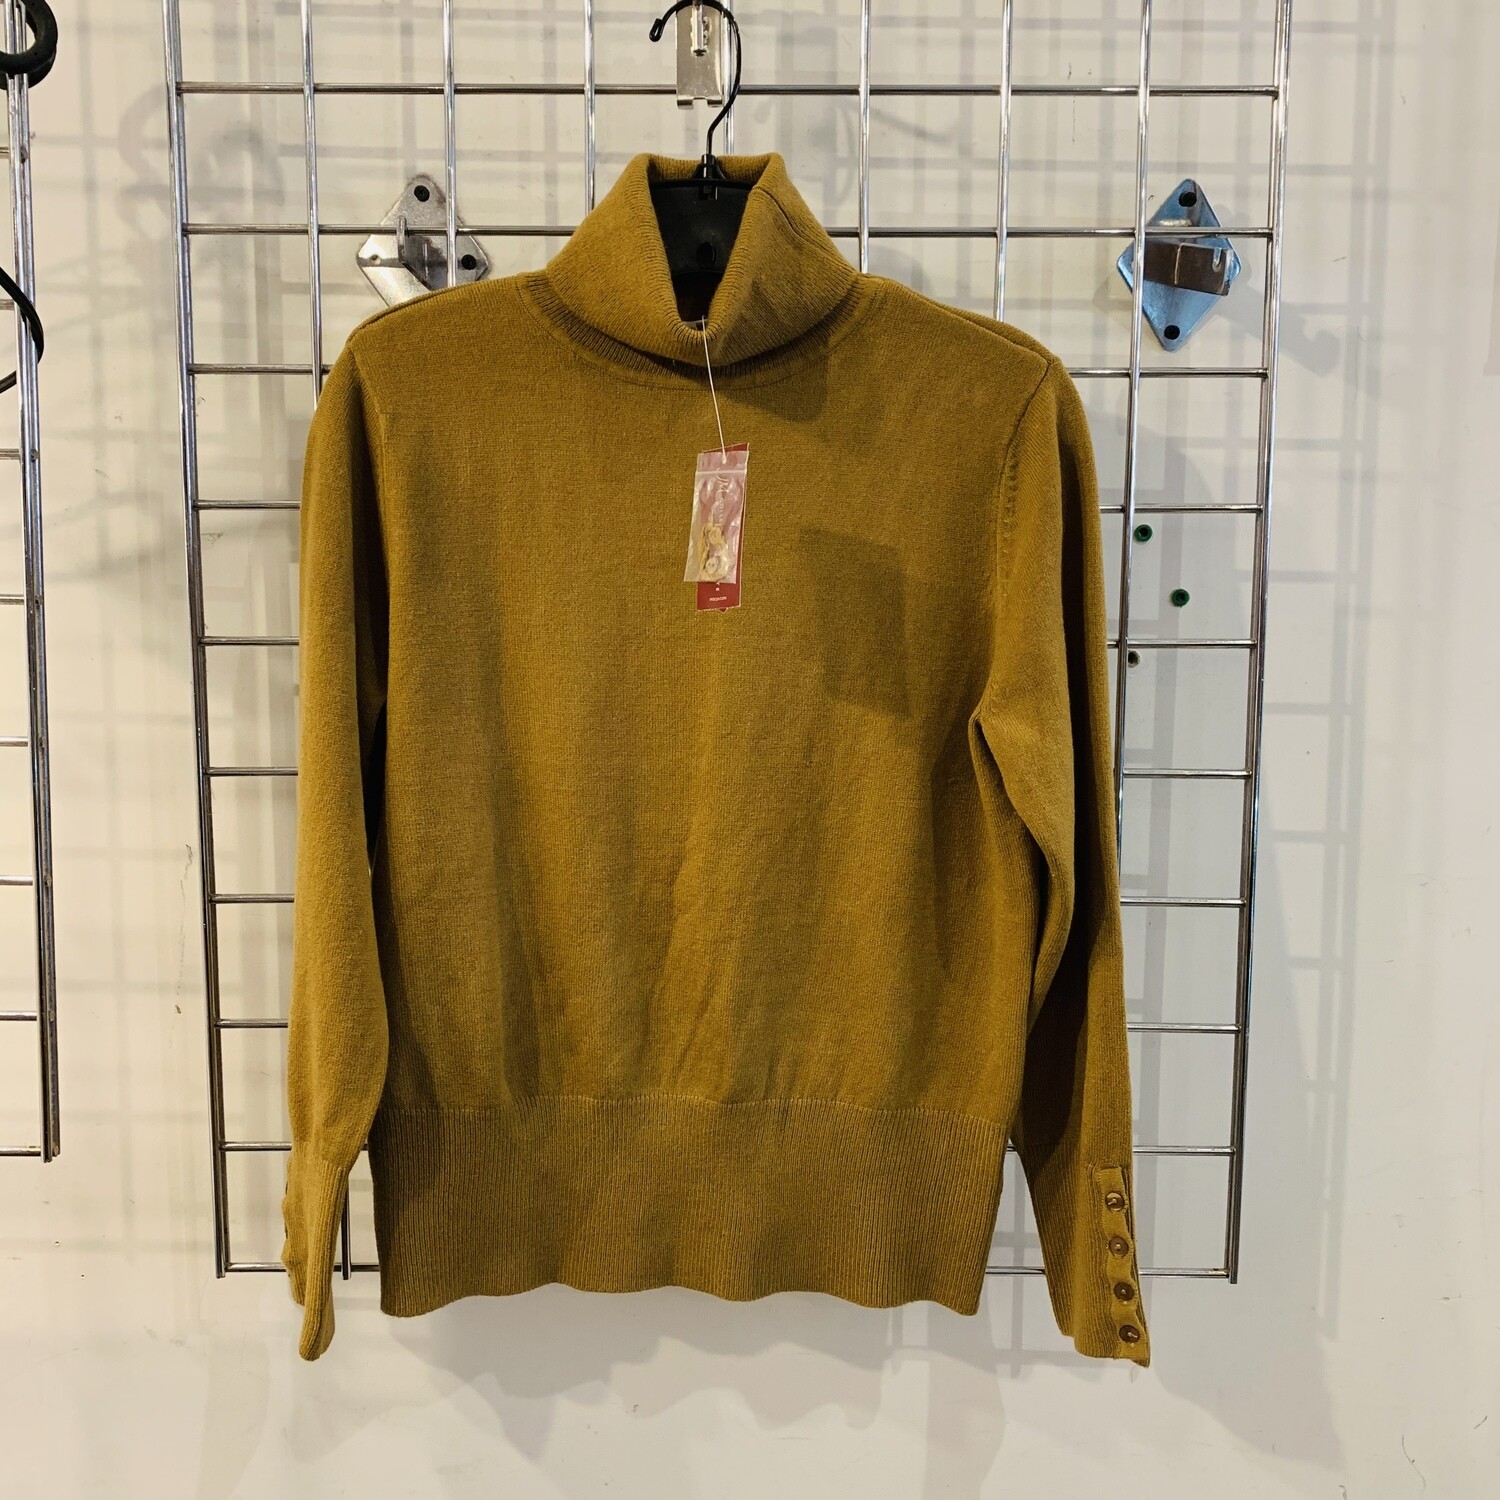 Size Petite Medium JM Collection Turtleneck Sweater Suede